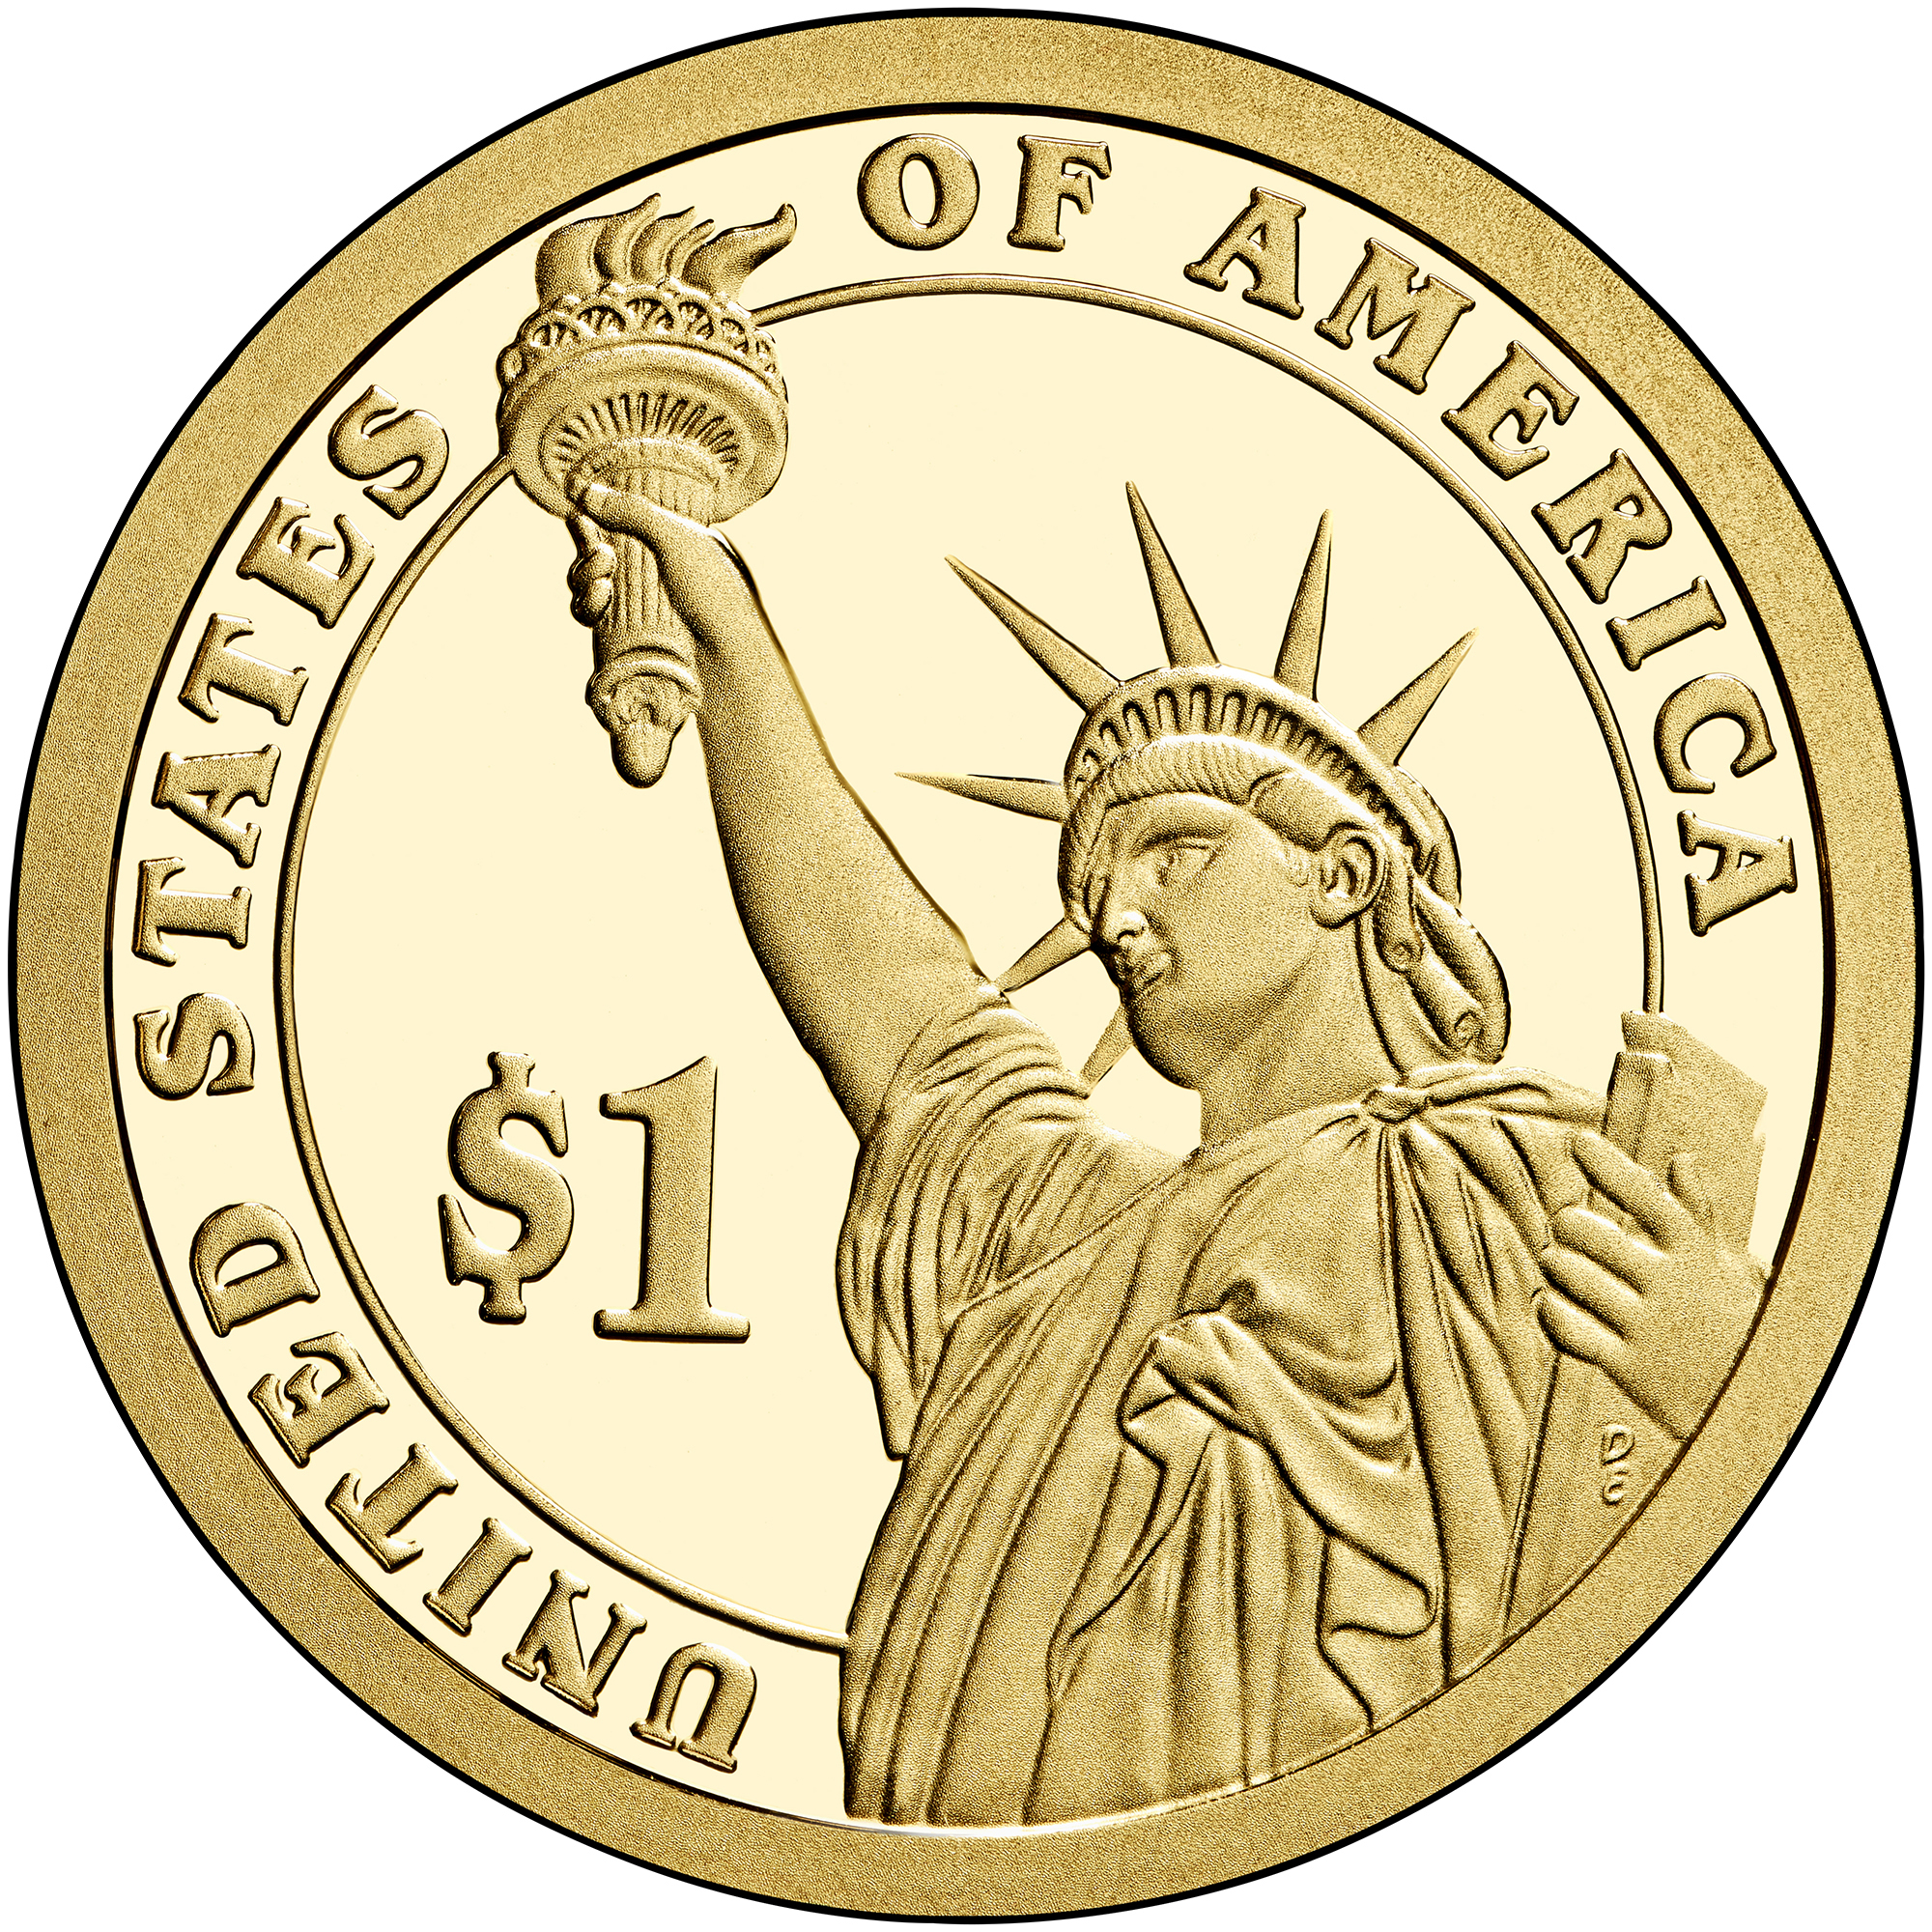 President BU 25th U.S 2013 P  $1 William McKinley 